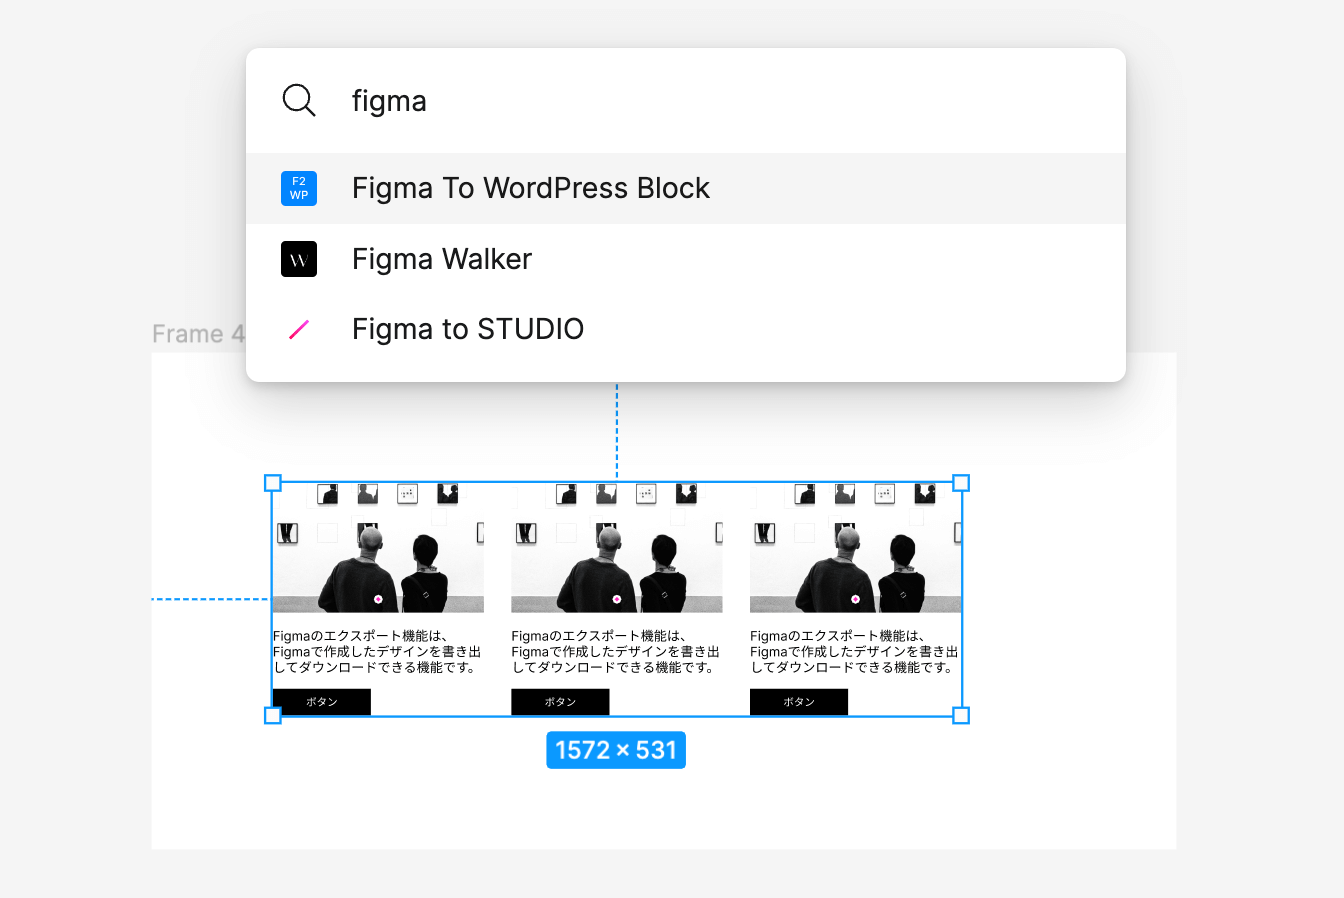 「Figma To WordPress Block」の使い方 2.デザインを選んでコードを生成する